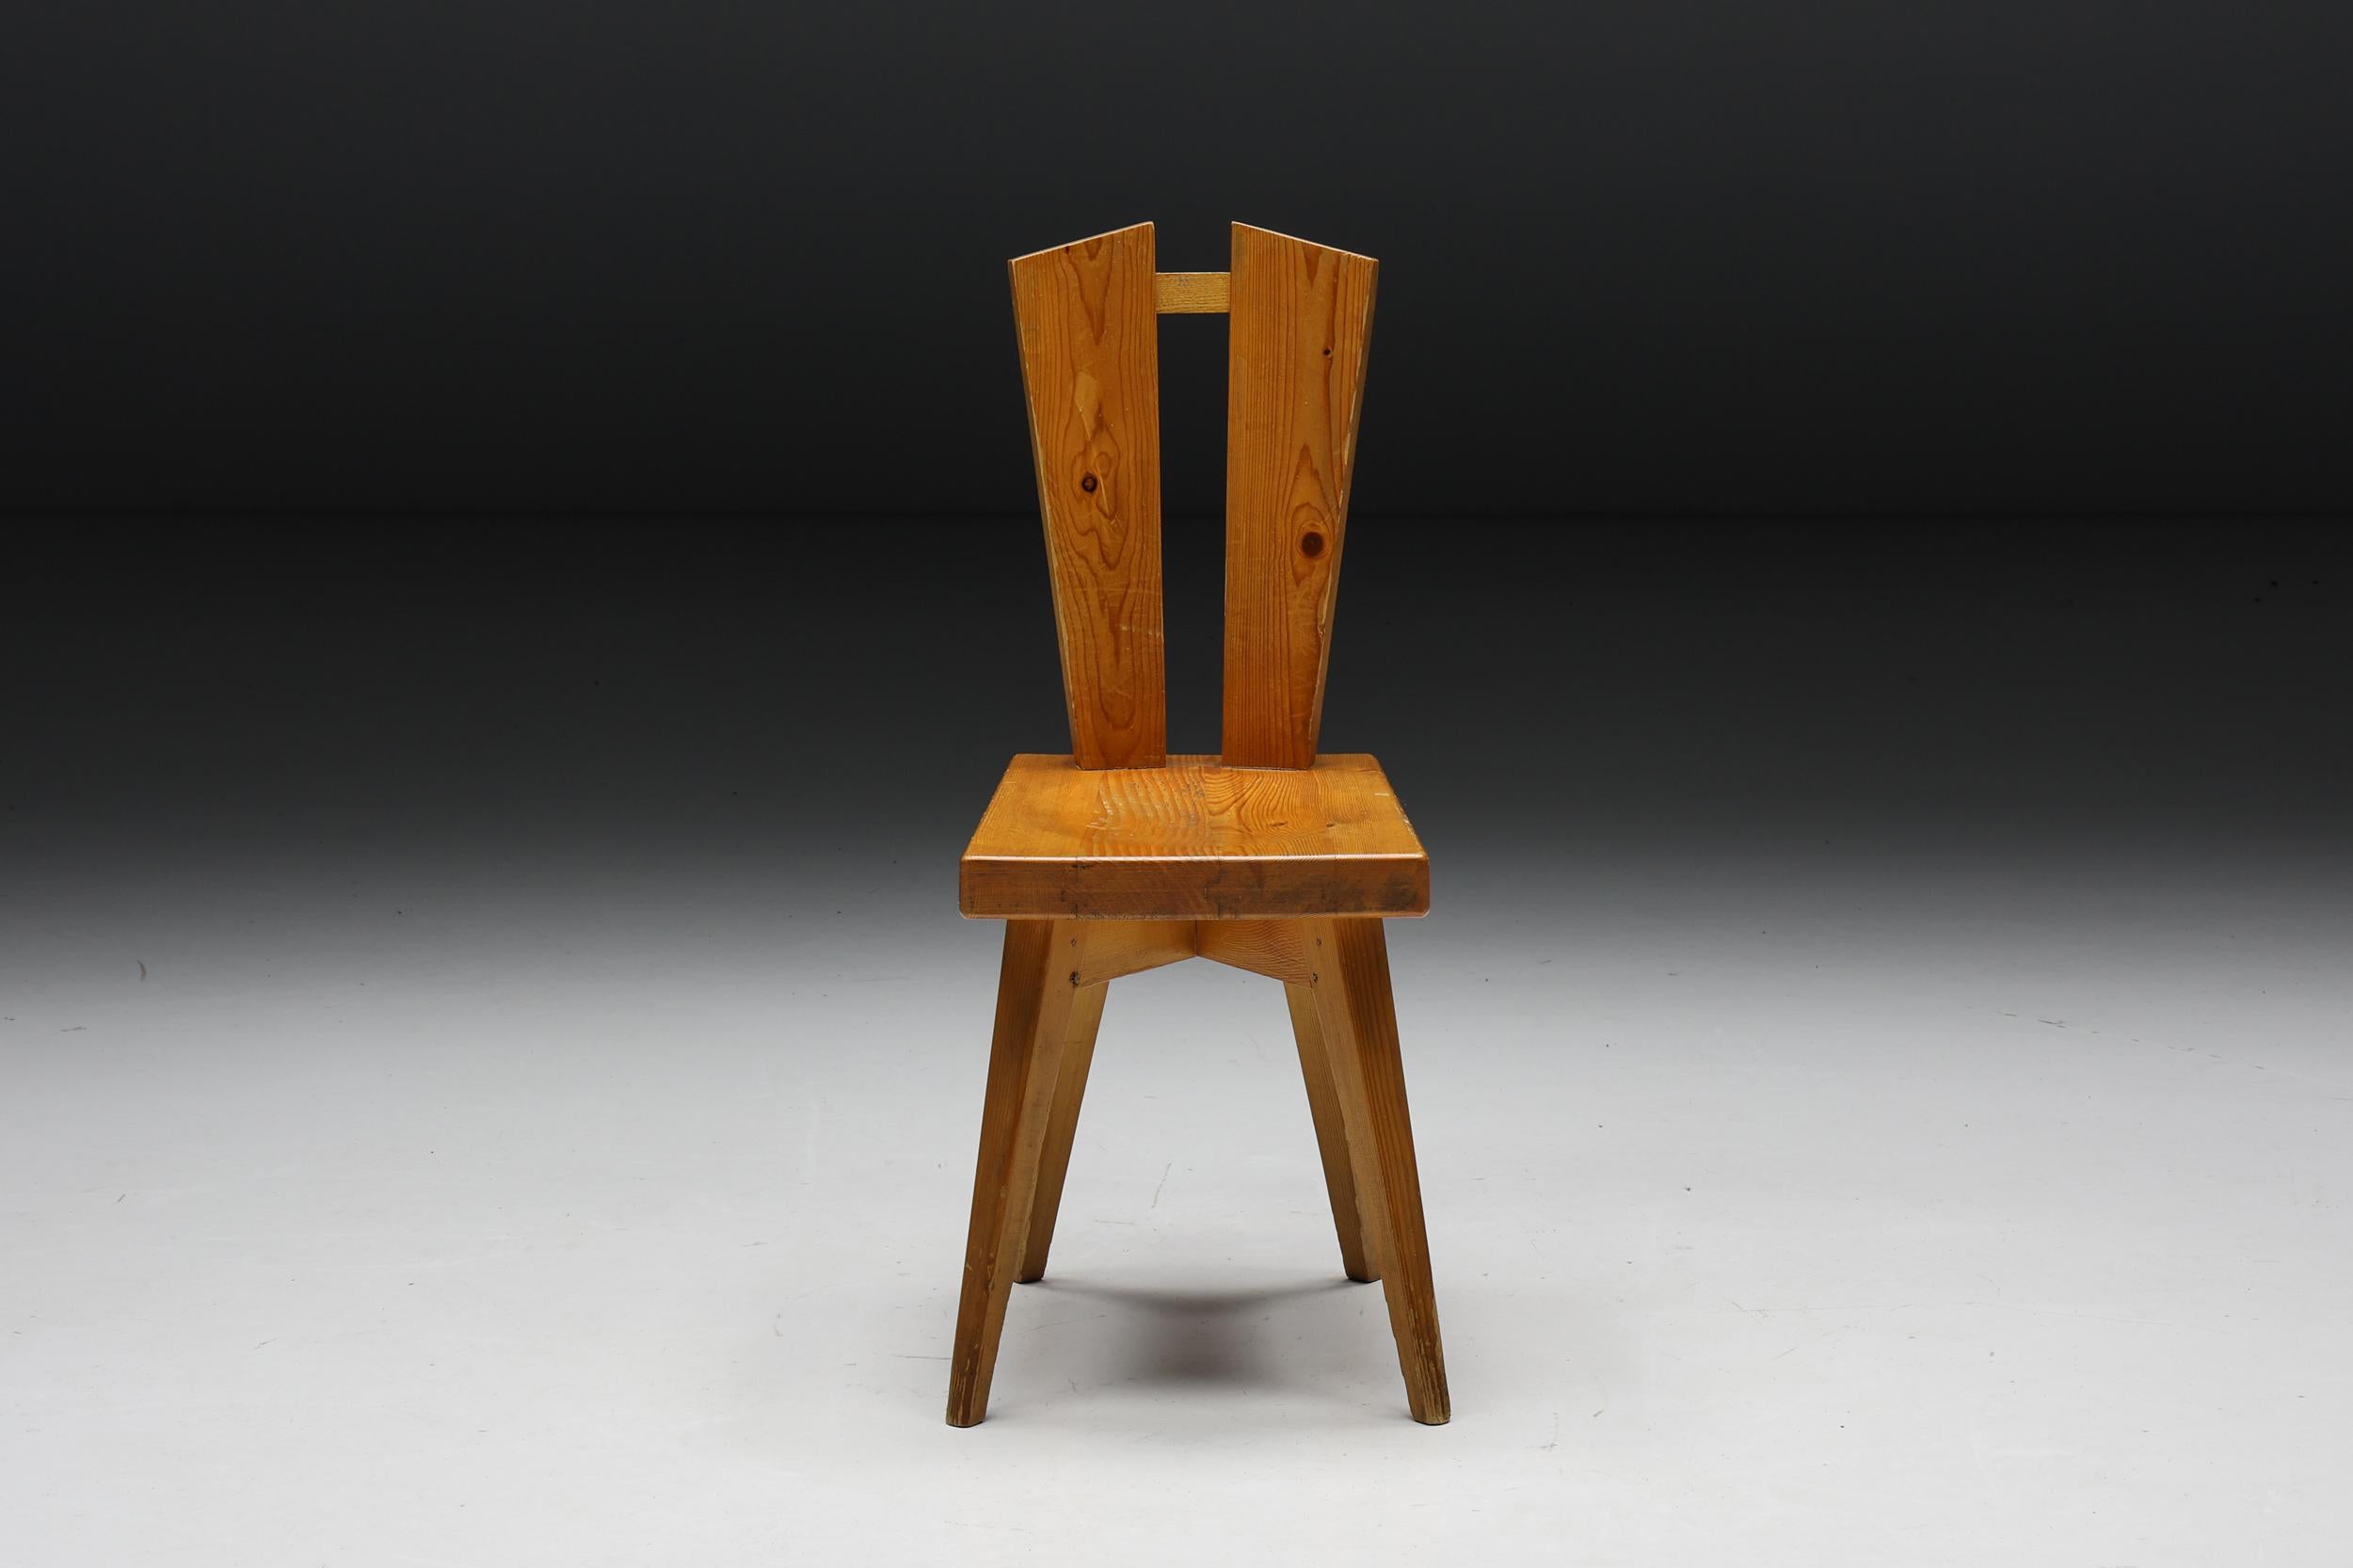 Chaise de salle à manger en bois de pin, un chef-d'œuvre intemporel né de la collaboration entre Christian Durupt et Charlotte Perriand en 1969. Fabriquée en bois de pin exquis, cette chaise étonnante a été conçue à l'origine pour la station de ski